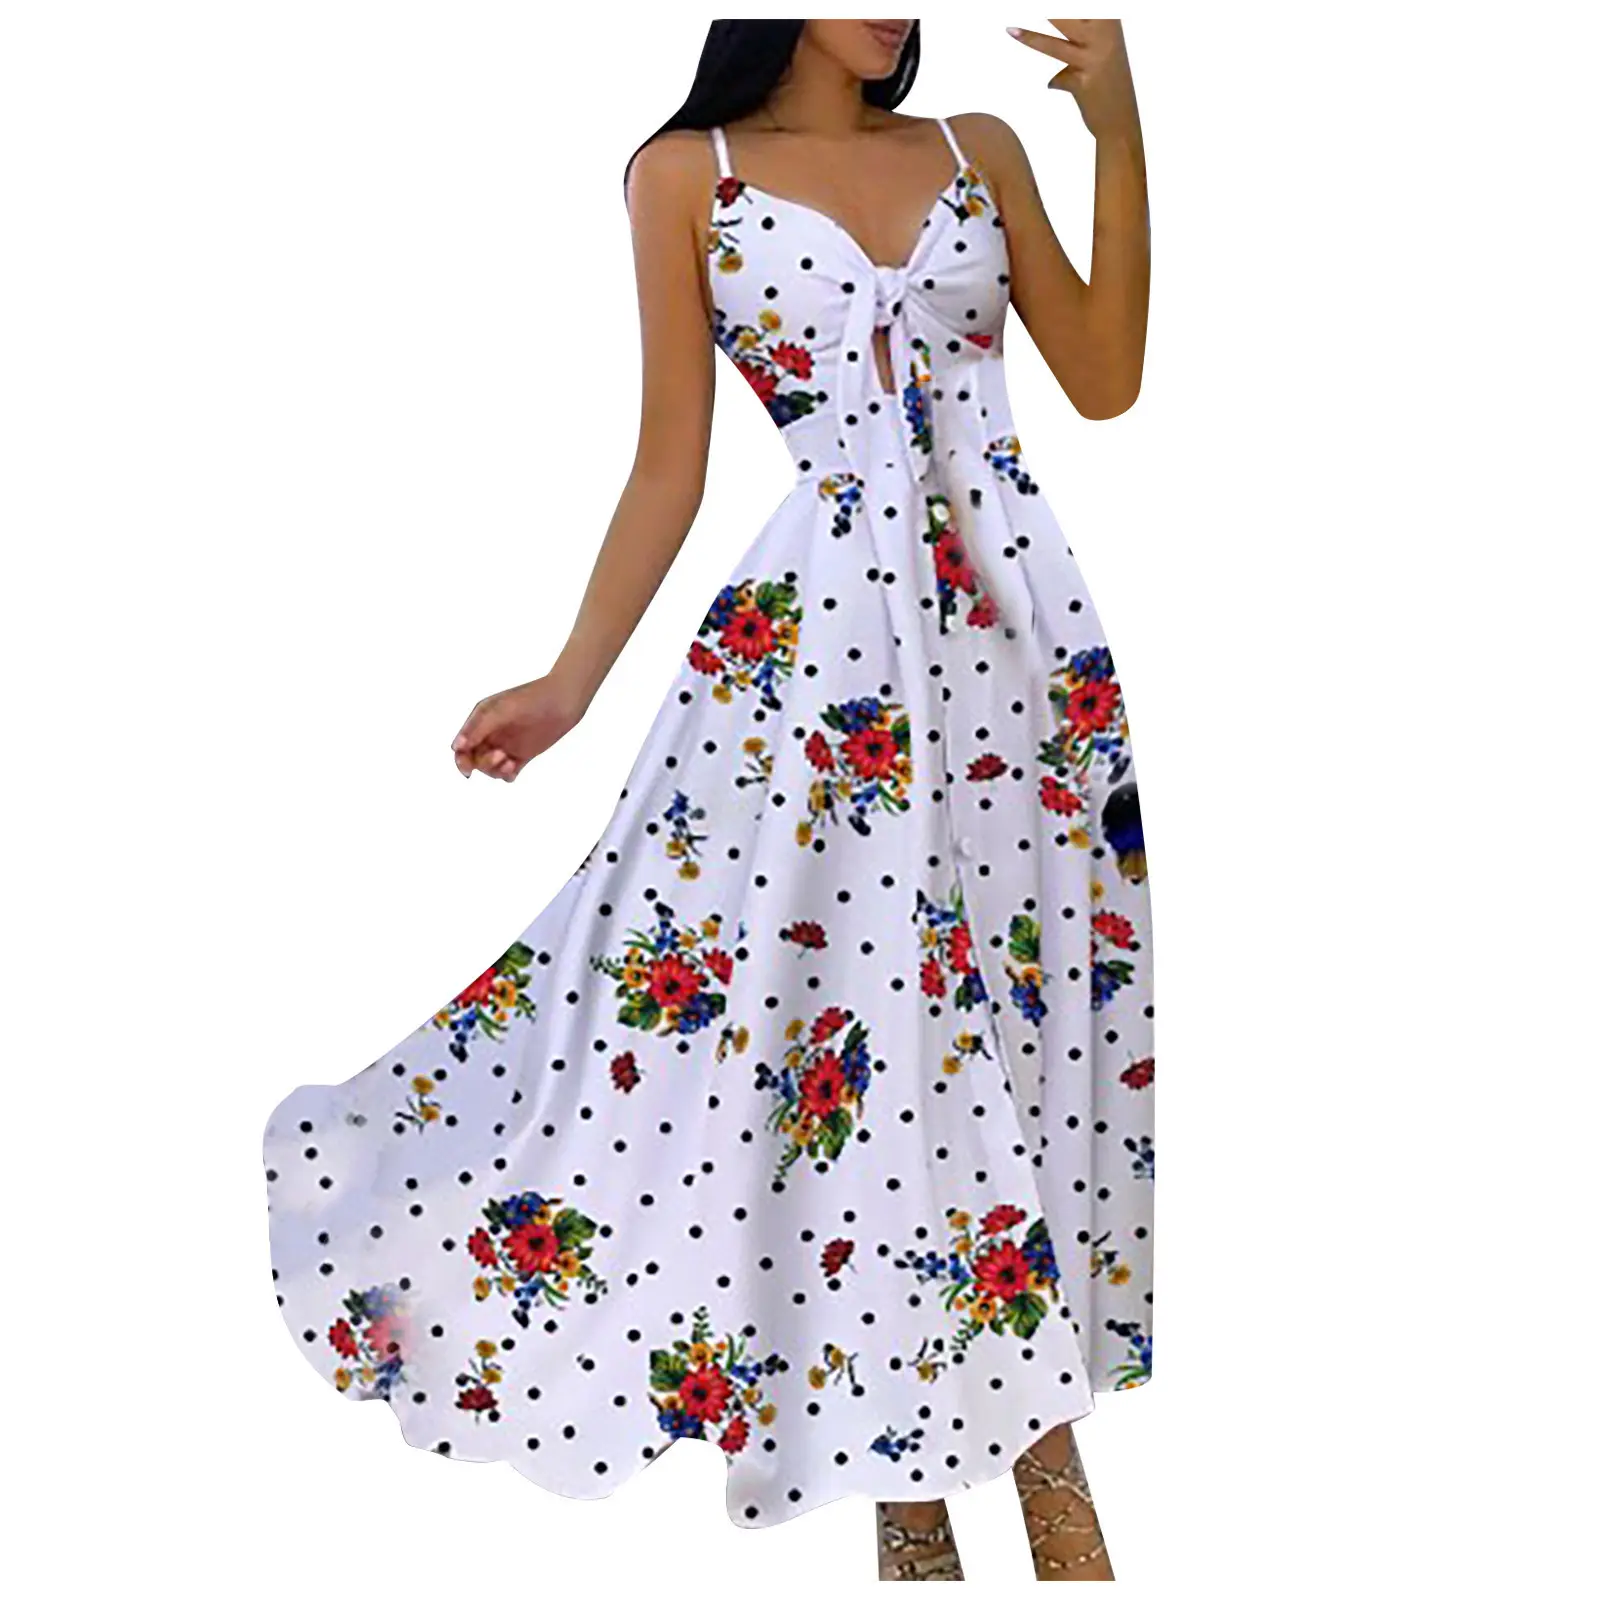 의류 도매 새로운 인피니티 드레스 Vestidos Blanco De Mujer Para Ninas 터키 v 넥 보우 드레스 캐주얼 드레스